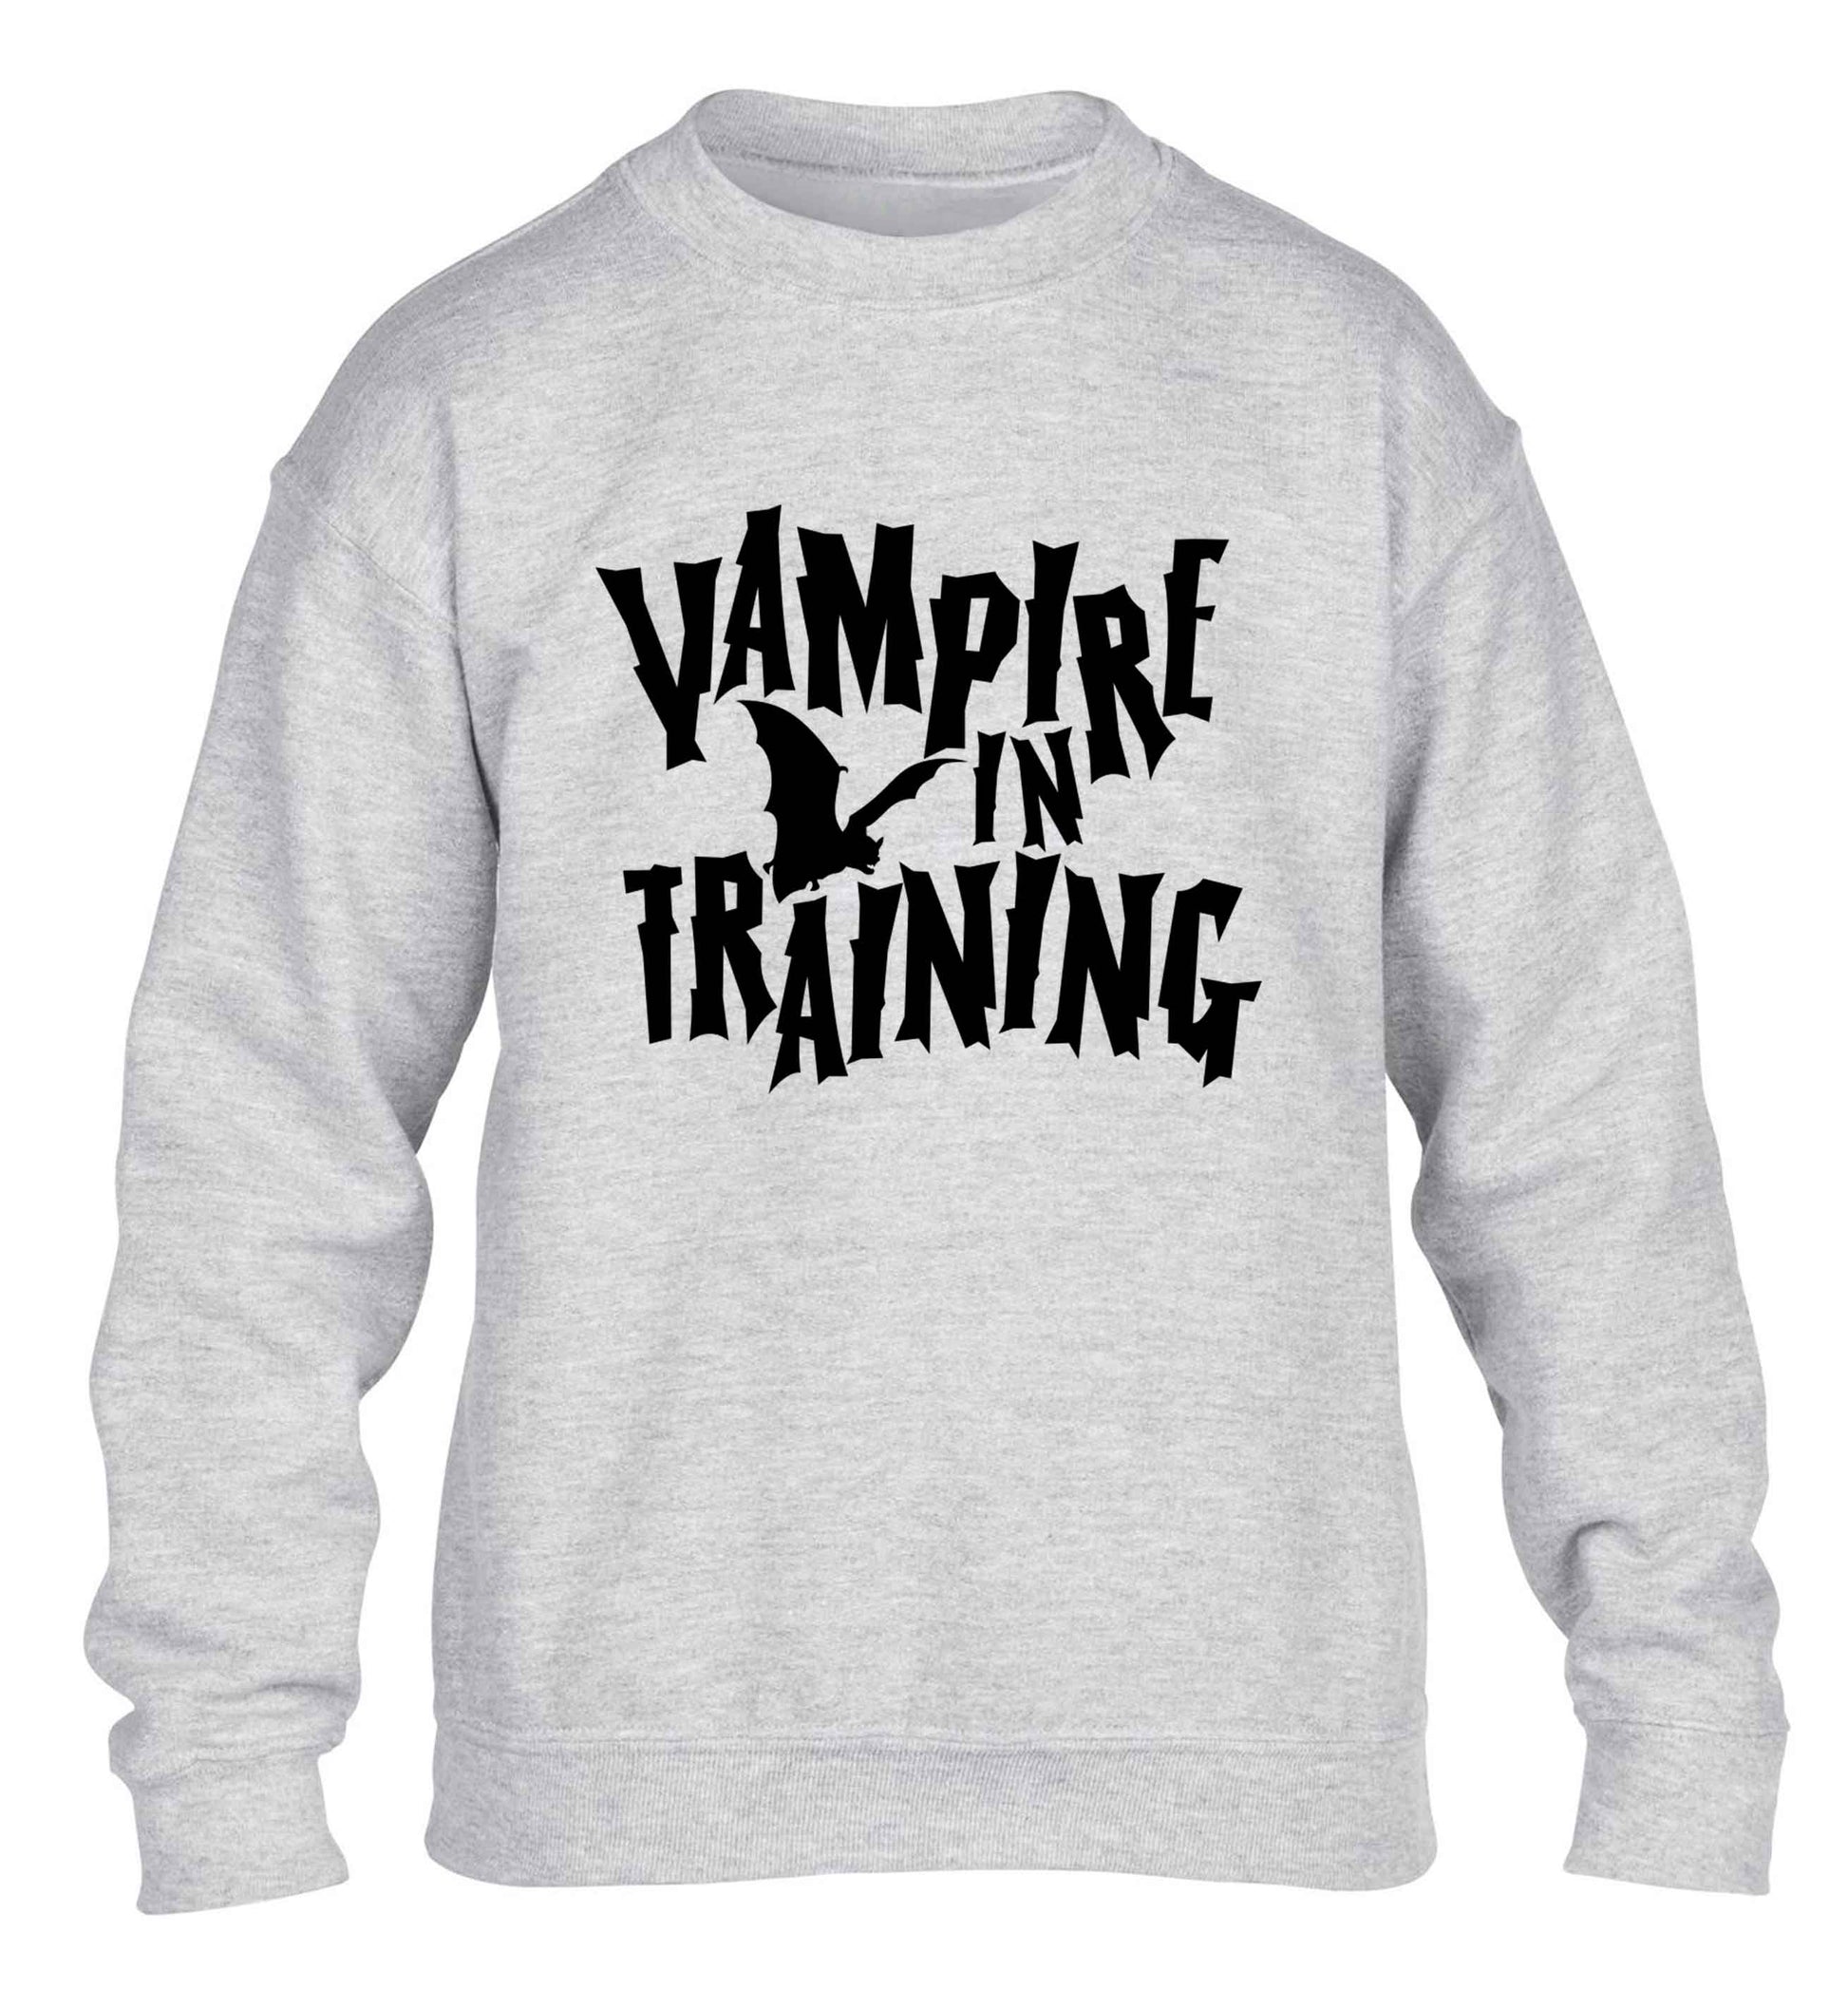 Vampire in training children's grey sweater 12-13 Years